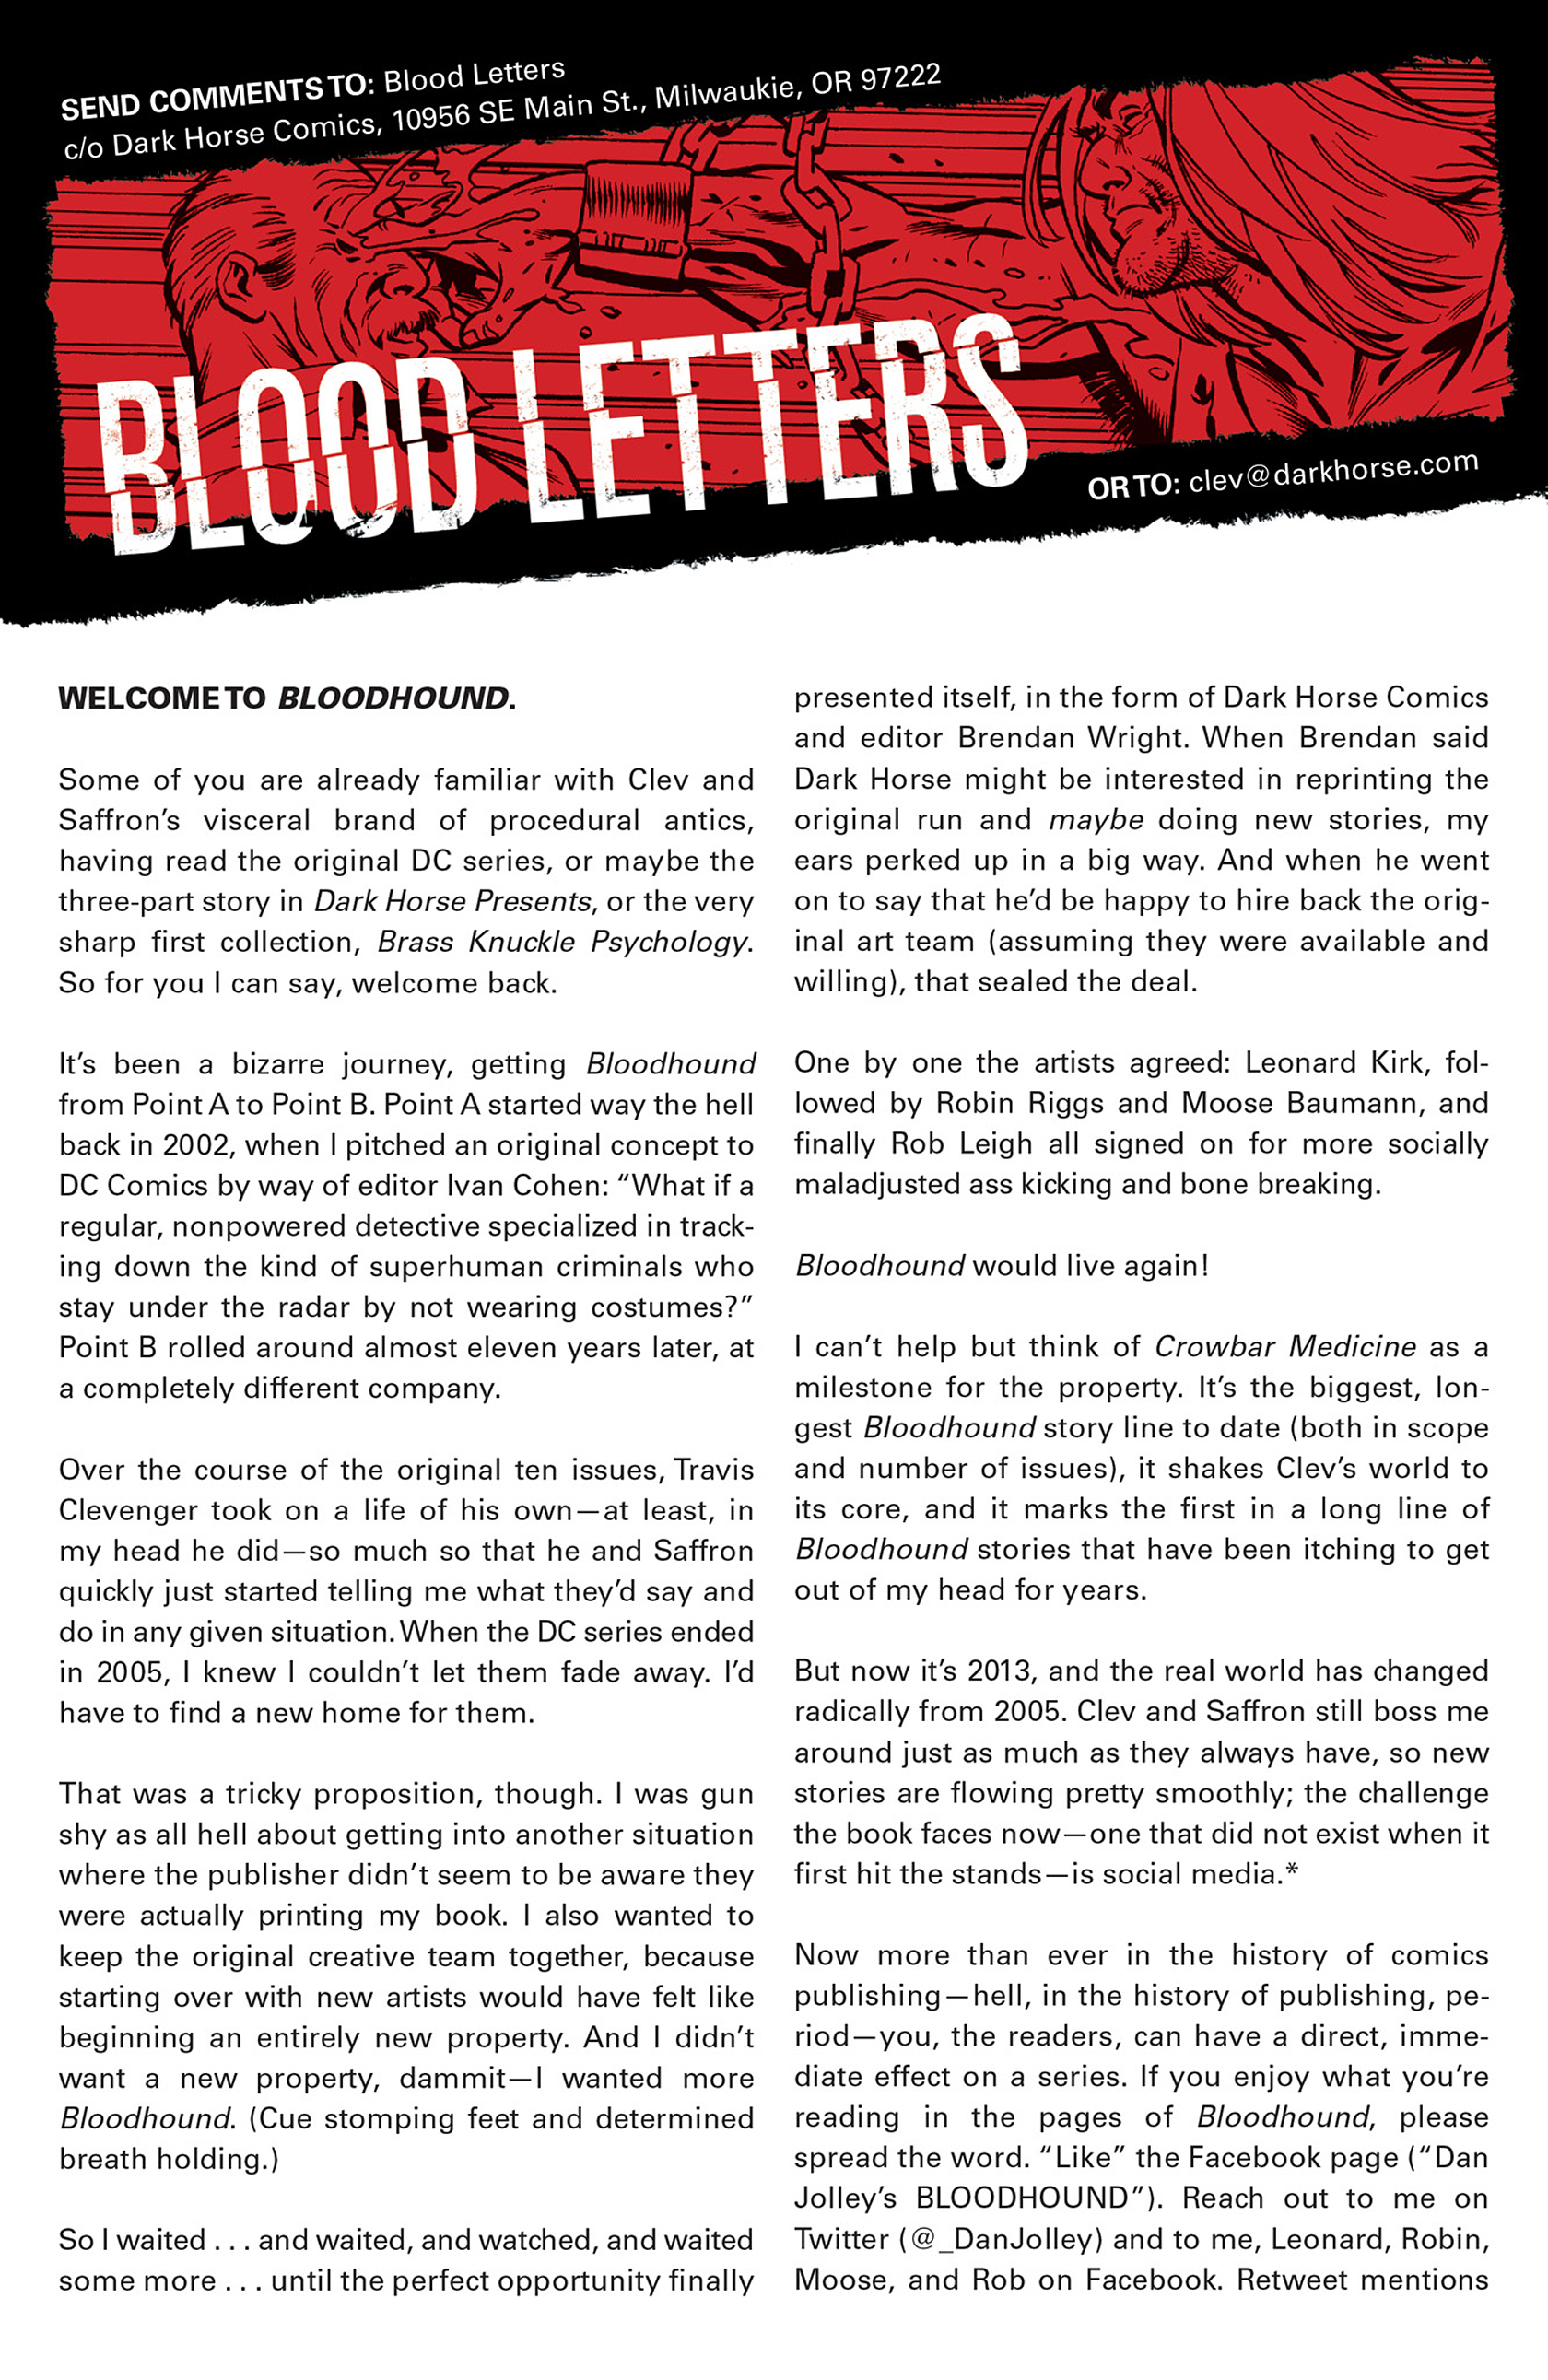 Read online Bloodhound: Crowbar Medicine comic -  Issue #1 - 24